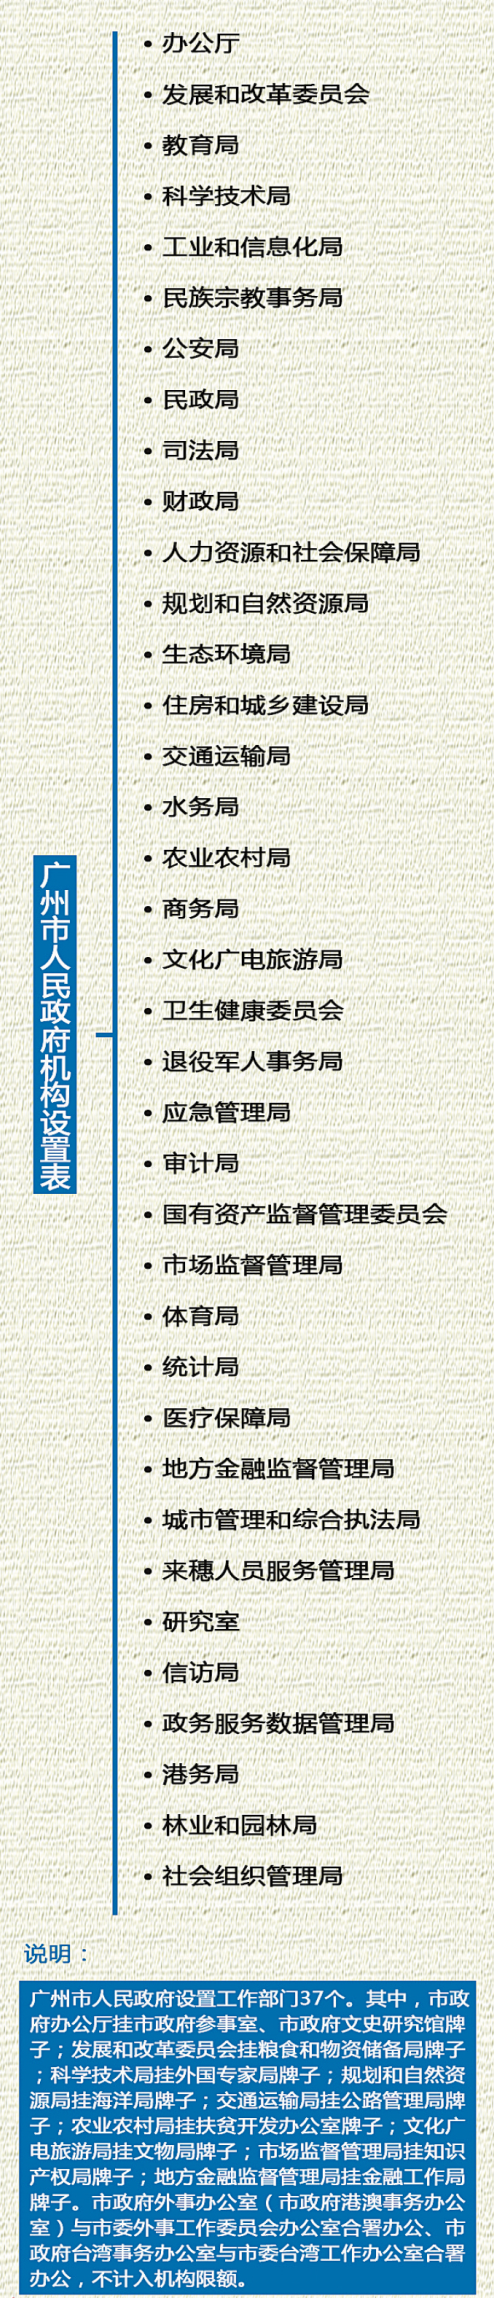 廣州市機構改革方案